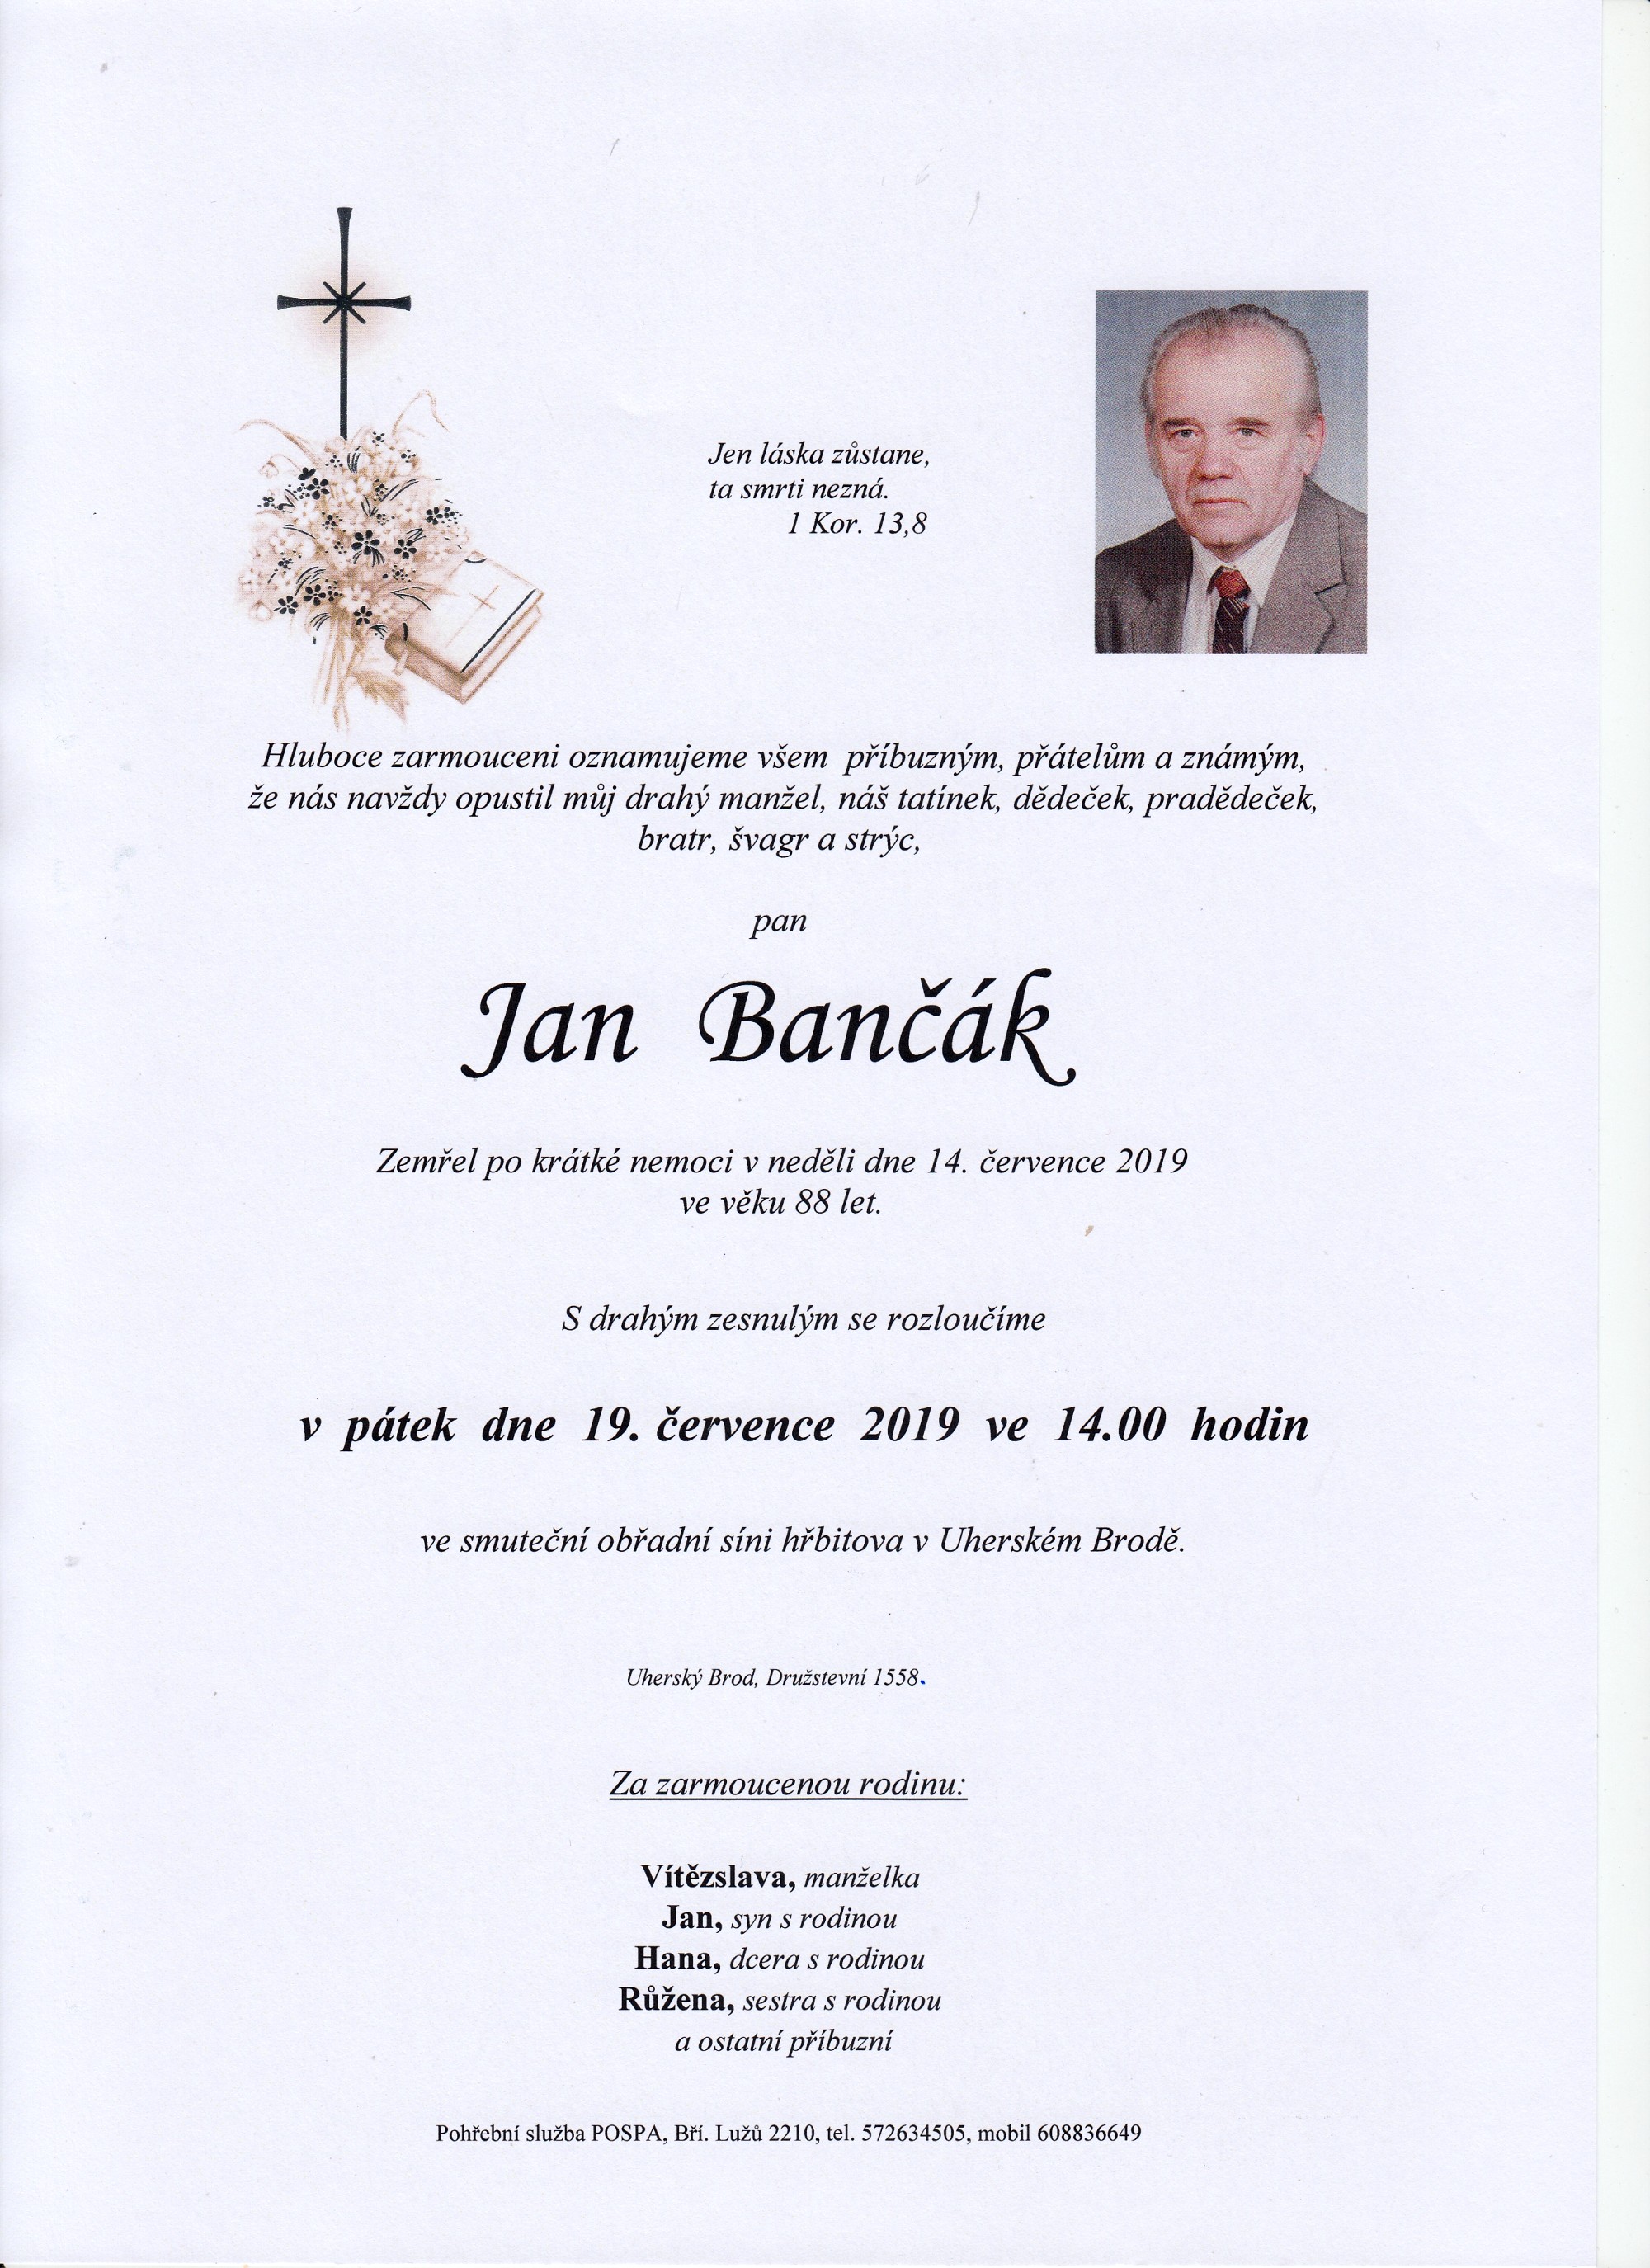 Jan Bančák